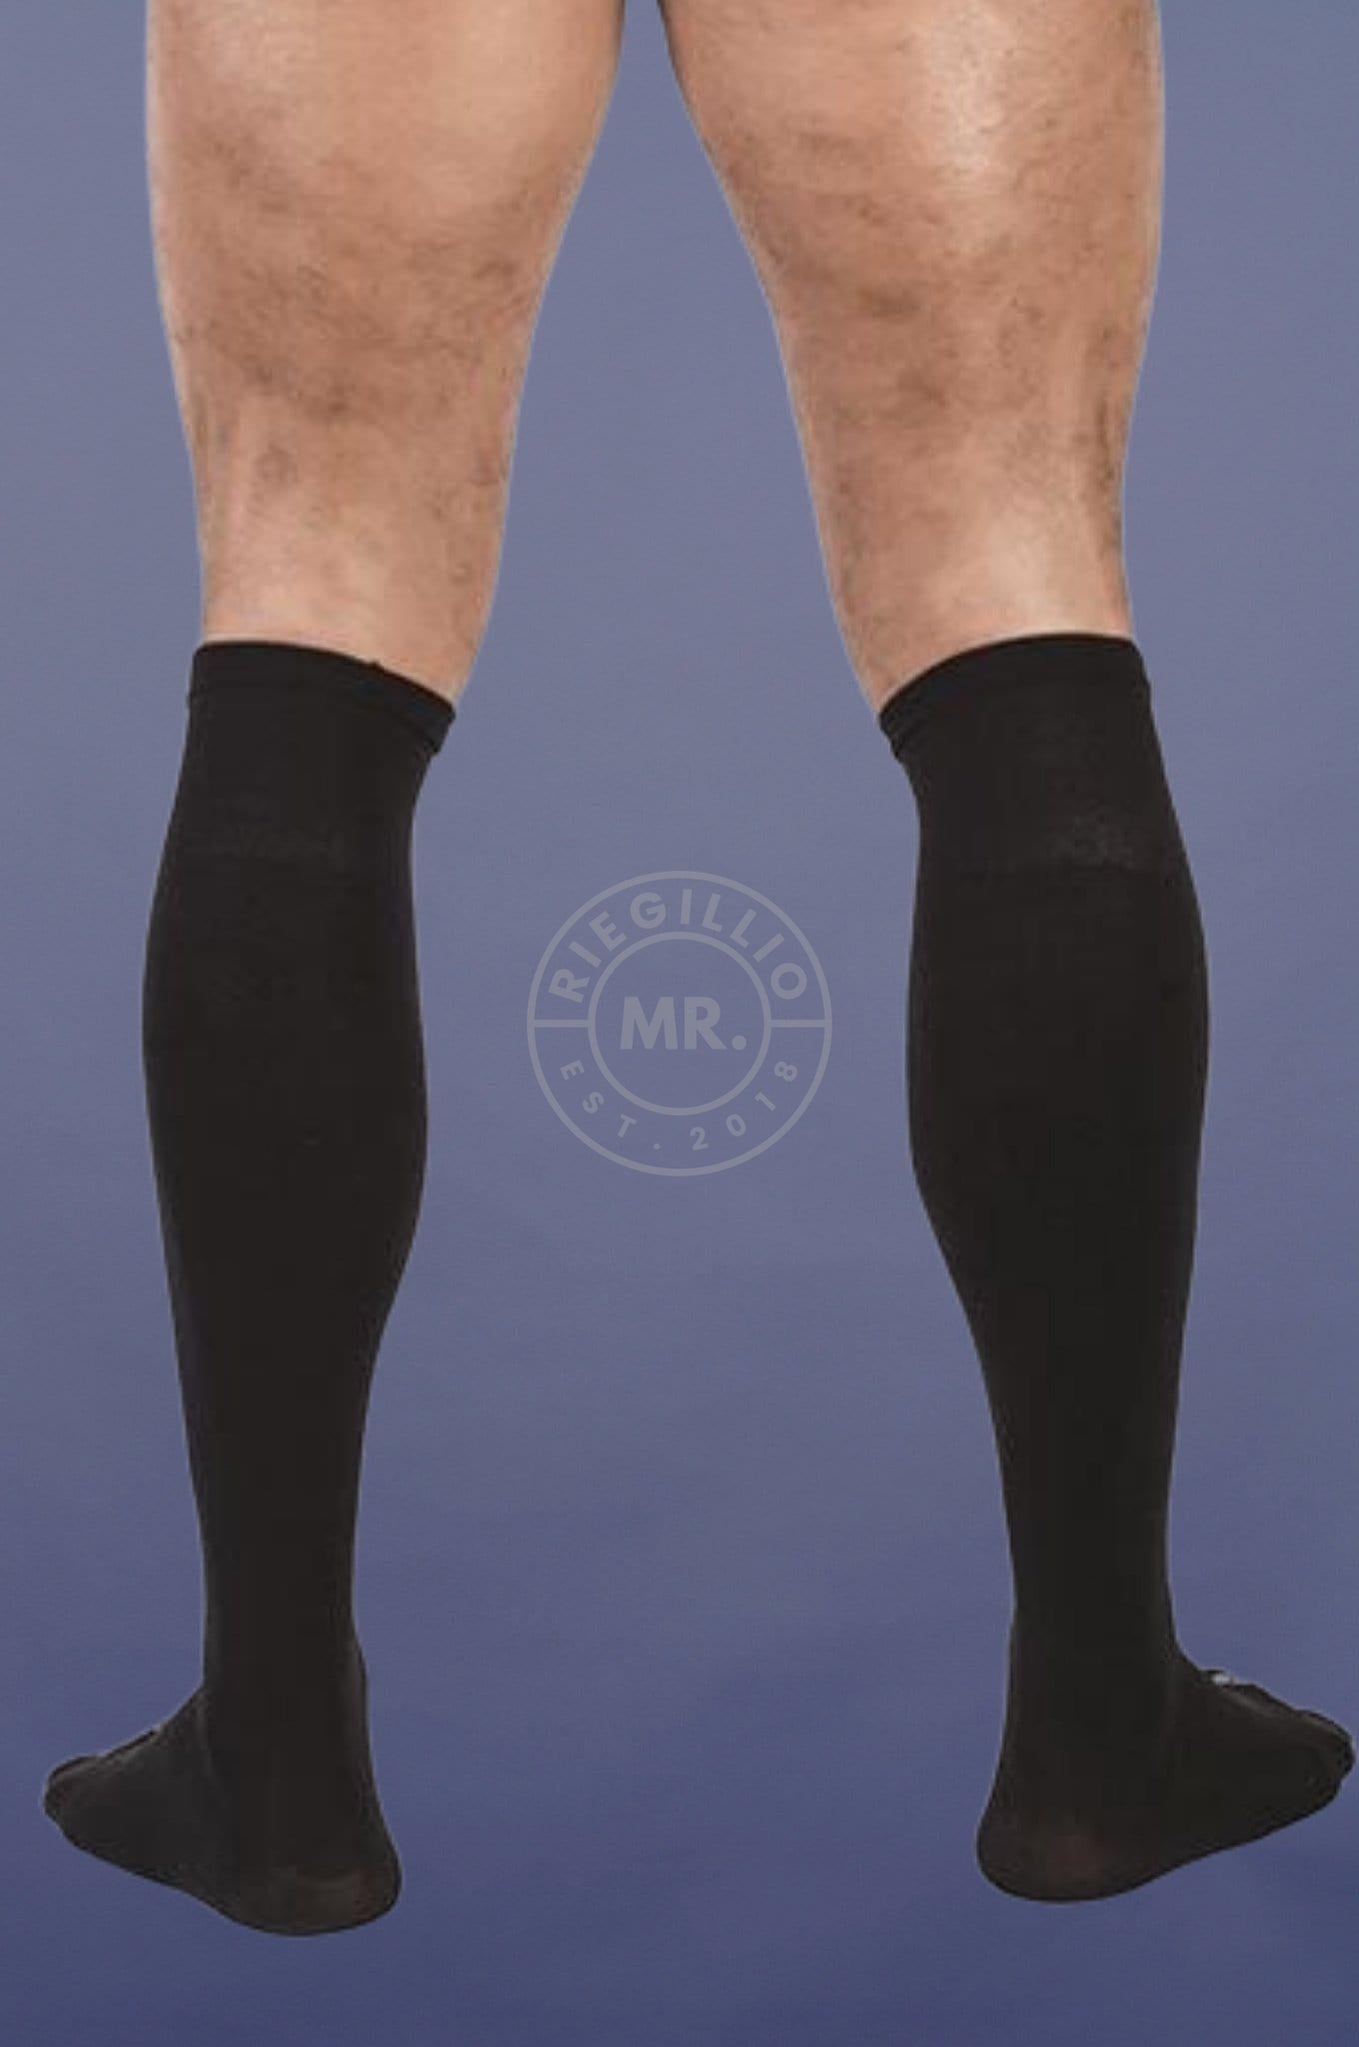 Football Socks Black-at MR. Riegillio